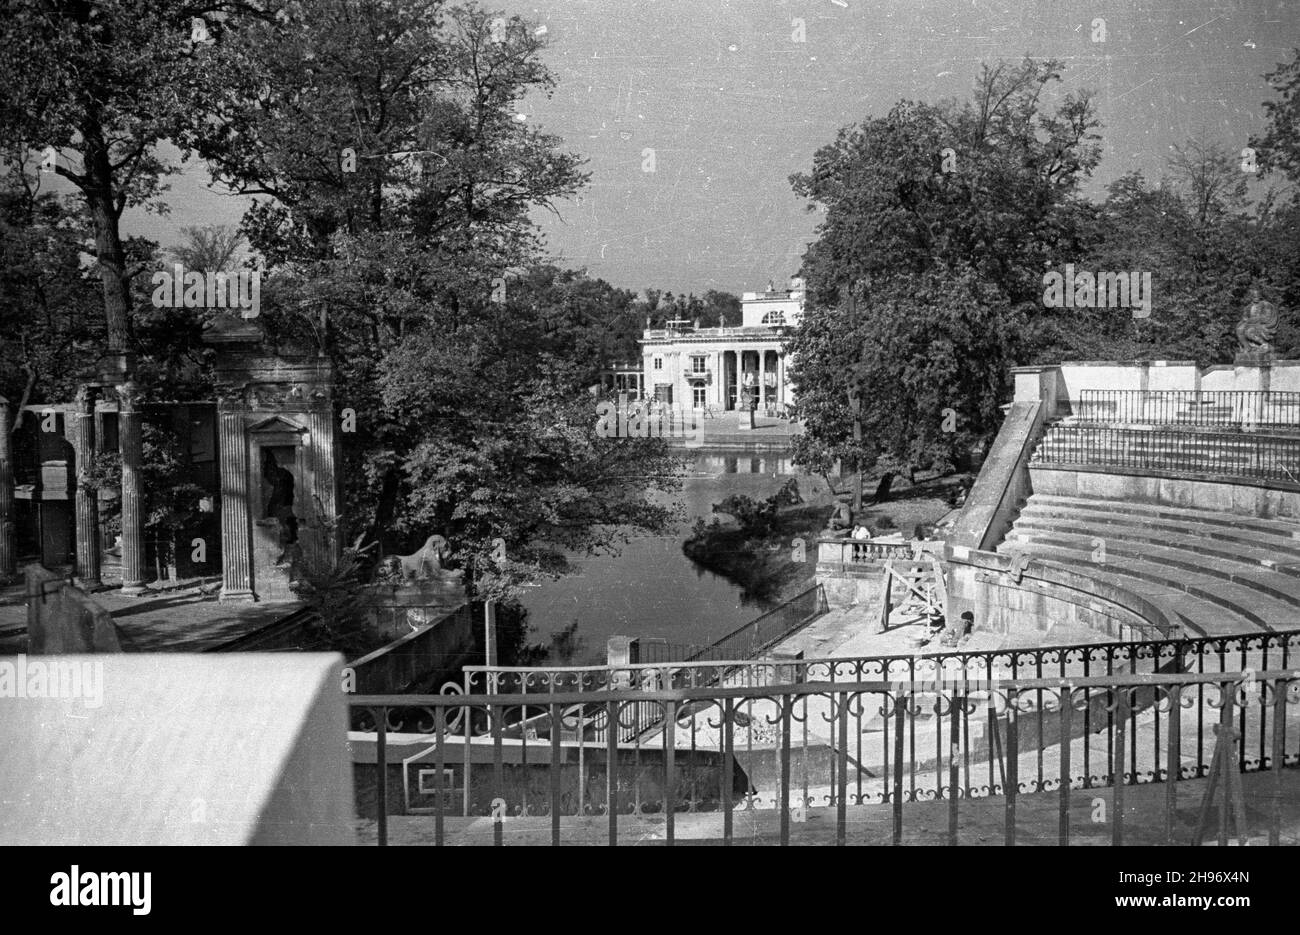 Warszawa, 1947-09. £azienki Królewskie. Teatr na Wyspie. Nz. Scena na Wyspie (po lewej) i Amfiteatr (po prawej) w trakcie remontu. W tle Pa³ac na Wodzie. bk/ppr  PAP  Dok³adny dzieñ wydarzenia nieustalony    Warsaw, Sept. 1947. Royal Lazienki Park. Theatre on the Island. Pictured: Stage on the Island (left) and Amphitheatre (right) during renovation work. In the background Palace on the Water.   bk/ppr  PAP Stock Photo